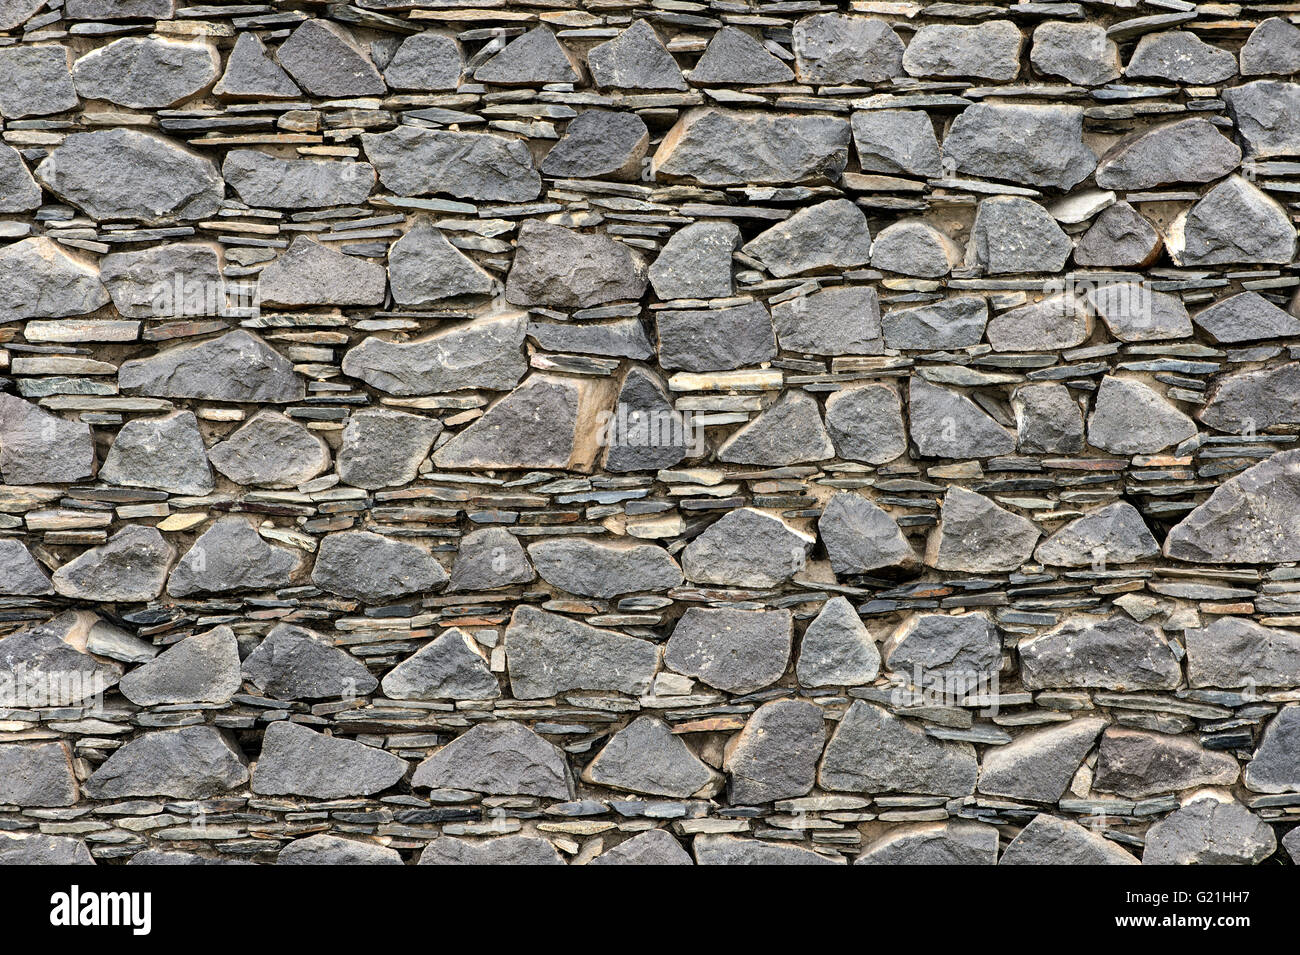 Wand von geschichteten Boden-Down Basaltsteinen und Schiefer, Ruinen der Kitan Festung Khar Bukh Balgas Khar Bakhin Balgas, Dashinchilen Stockfoto